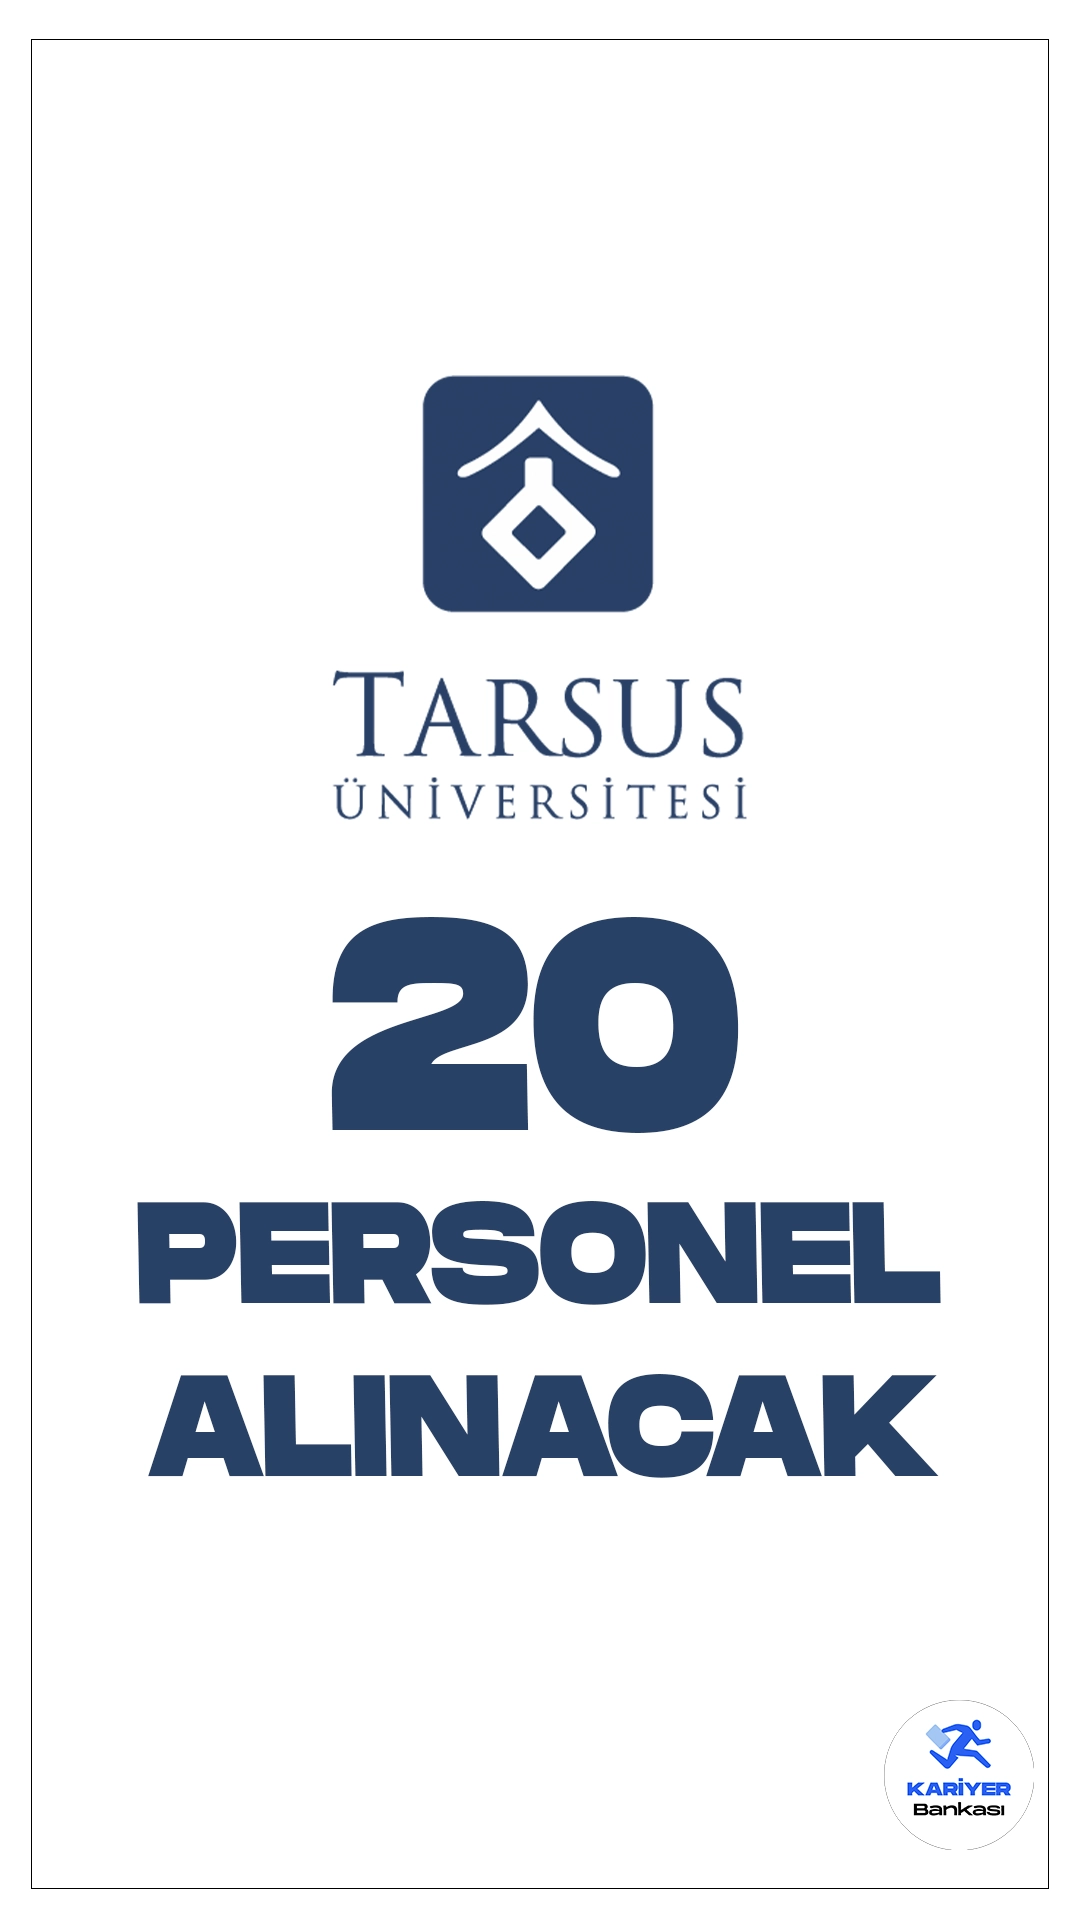 Tarsus Üniversitesi 20 Personel Alımı Yapacak. Cumhurbaşkanlığı SBB'de yayımlanan duyuruda, Tarsus Üniversitesine büro personeli, koruma ve güvenlik görevlisi, destek personeli(temizlik) ünvanlarında personel alımı yapılacak. Başvuru yapacak adayların başvuru şartlarını taşıması gerekmektedir.